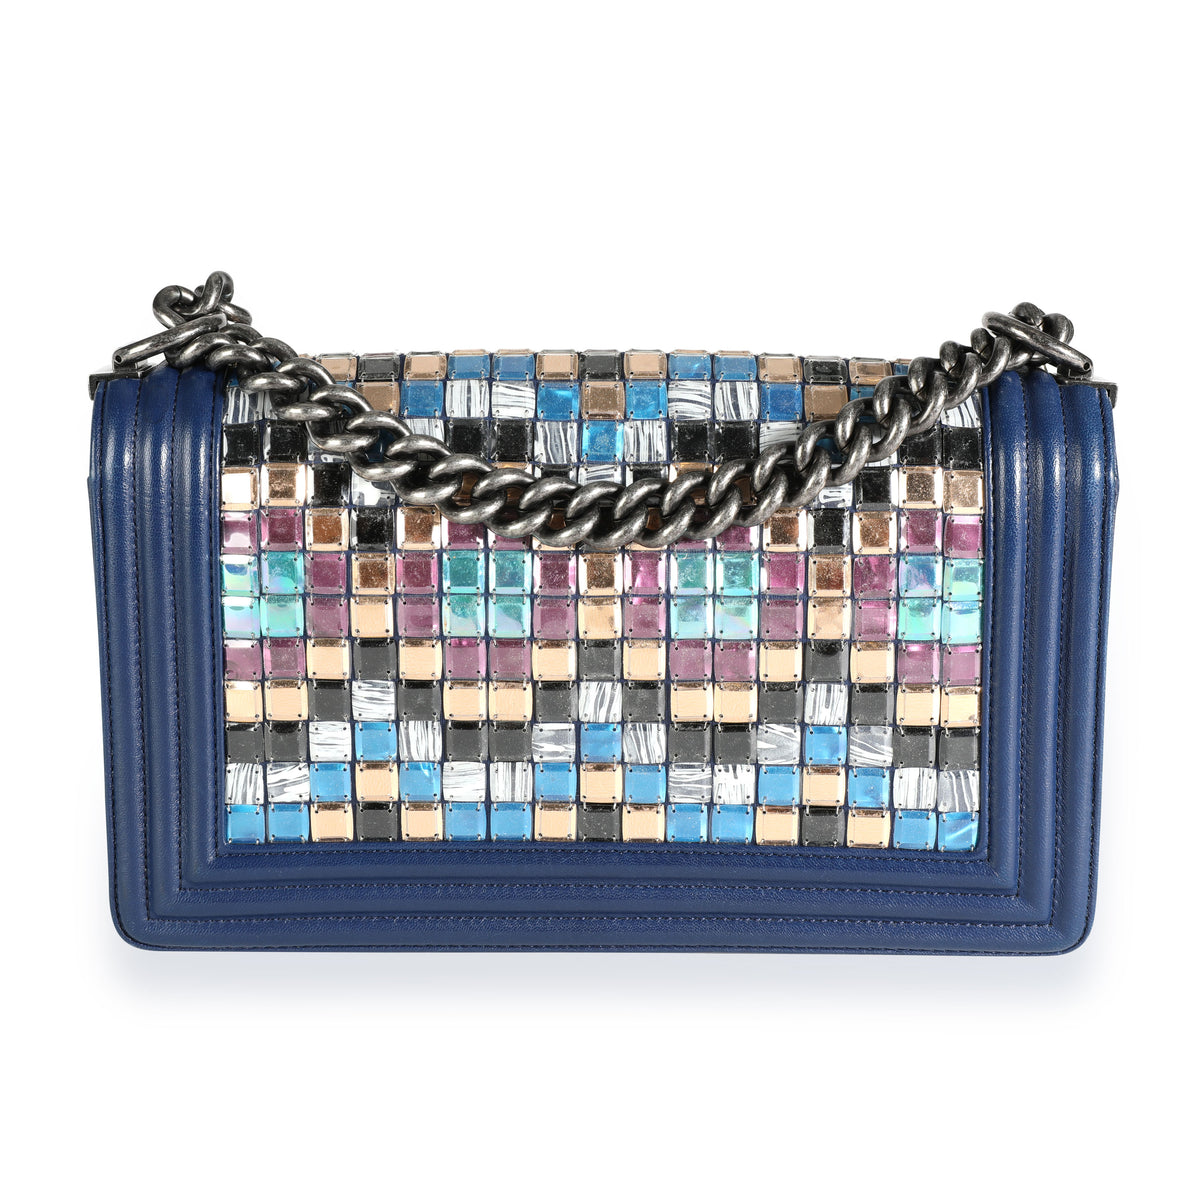 Chanel Limited Edition Navy Blue Leather & Mosaic Medium Boy Bag, myGemma